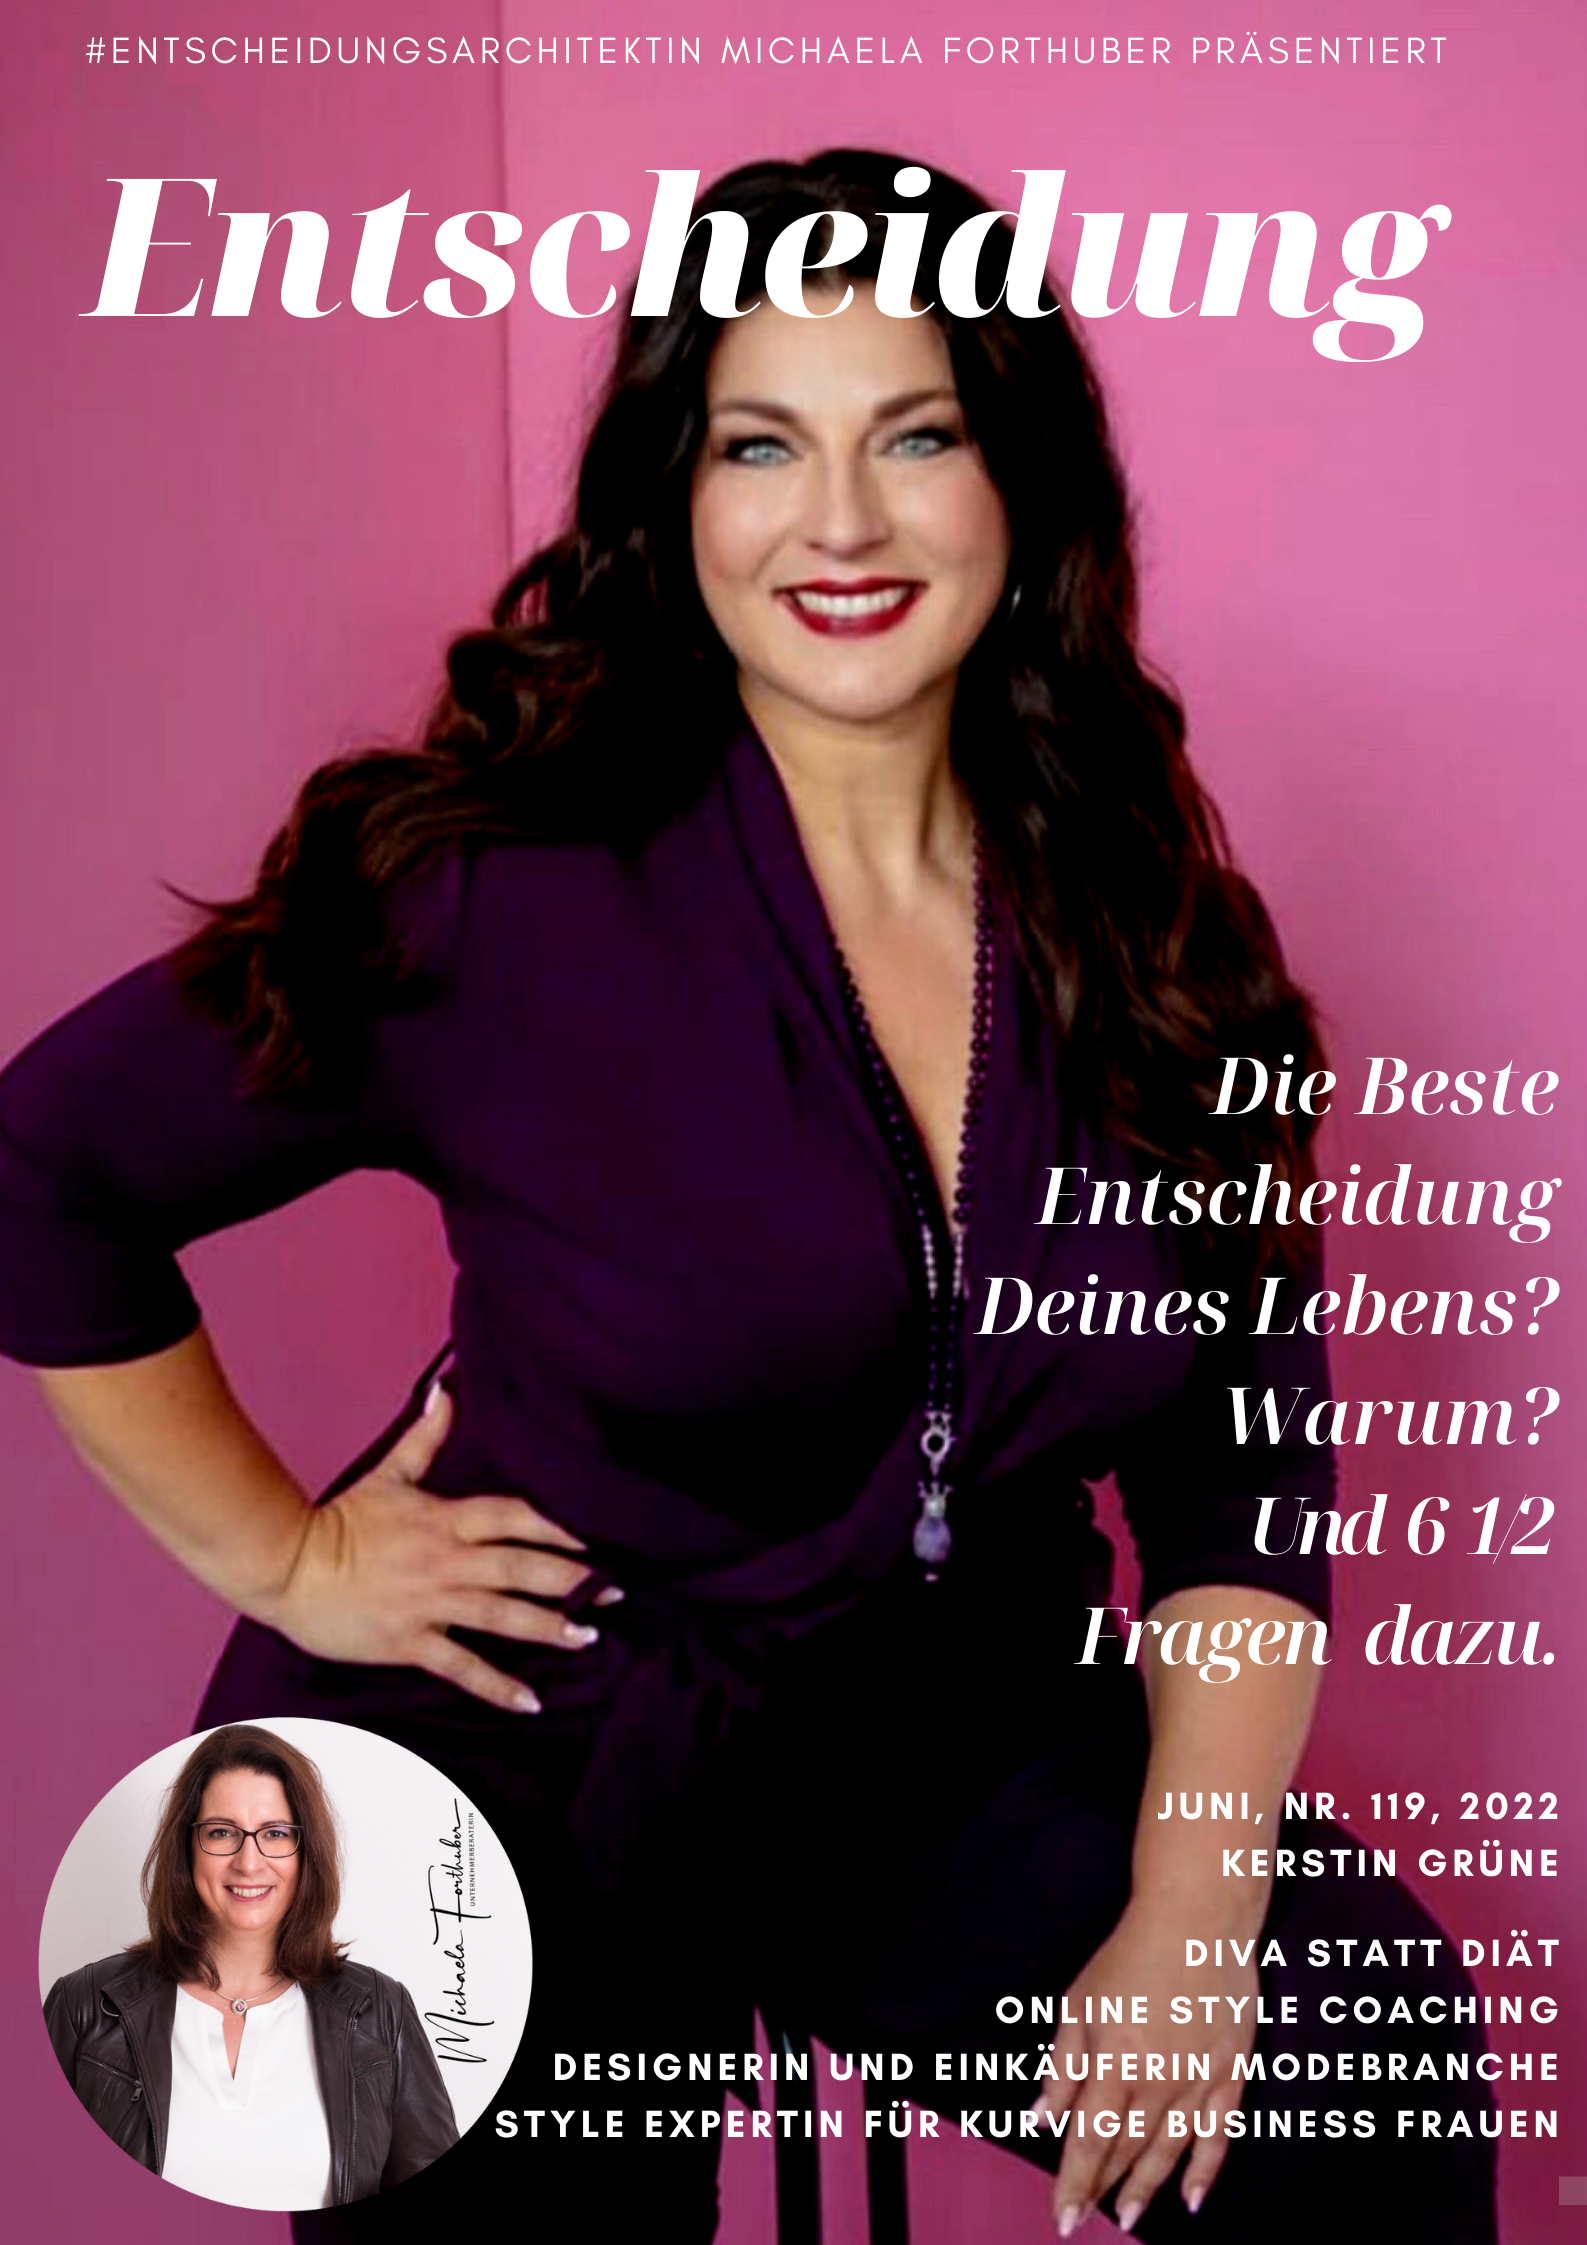 Blog Interview Entscheiden Cover Michaela Forthuber #Entscheidungsarchitektin mit Kerstin Grüne